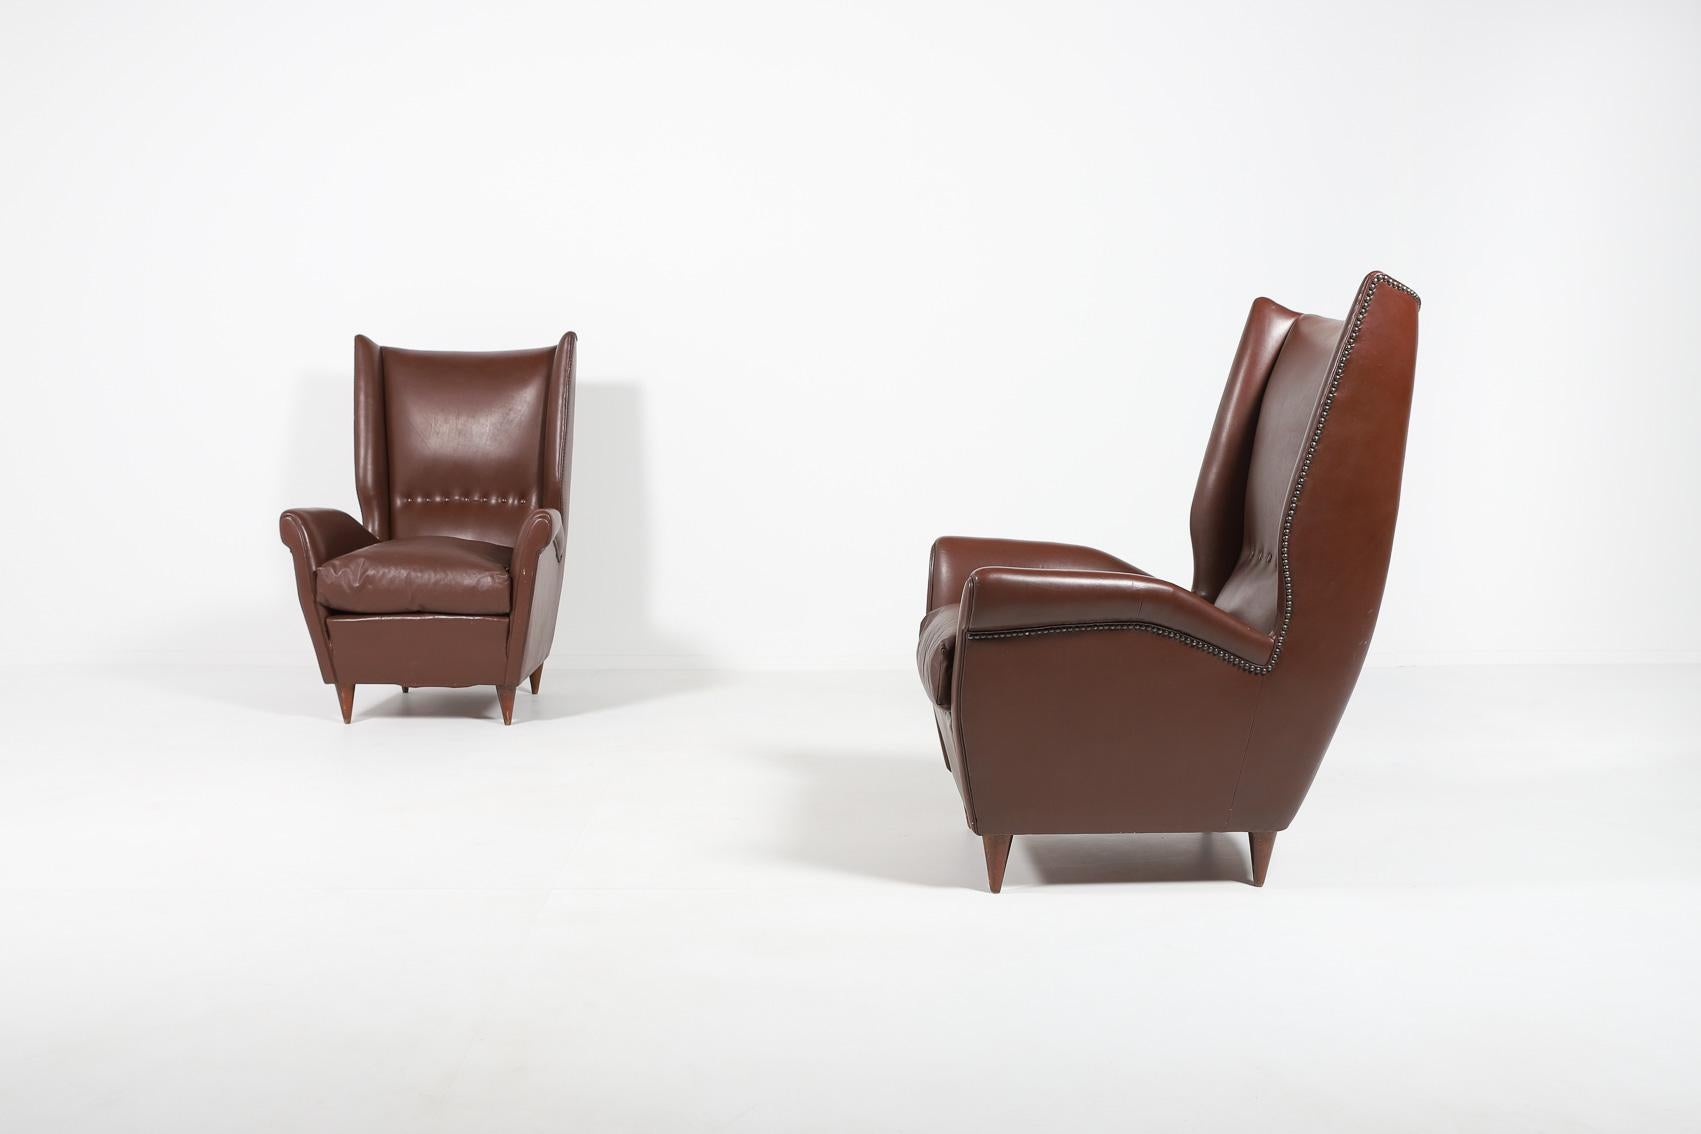 Paar 2 spektakuläre Loungesessel in braunem Leder auf gebeizten Holzbeinen, lose Sitzkissen. Die Meisterleistung der italienischen Architektur- und Designikone Gio Ponti, aristokratisch und elegant zugleich.

Bedingung
Gut, altersgemäße